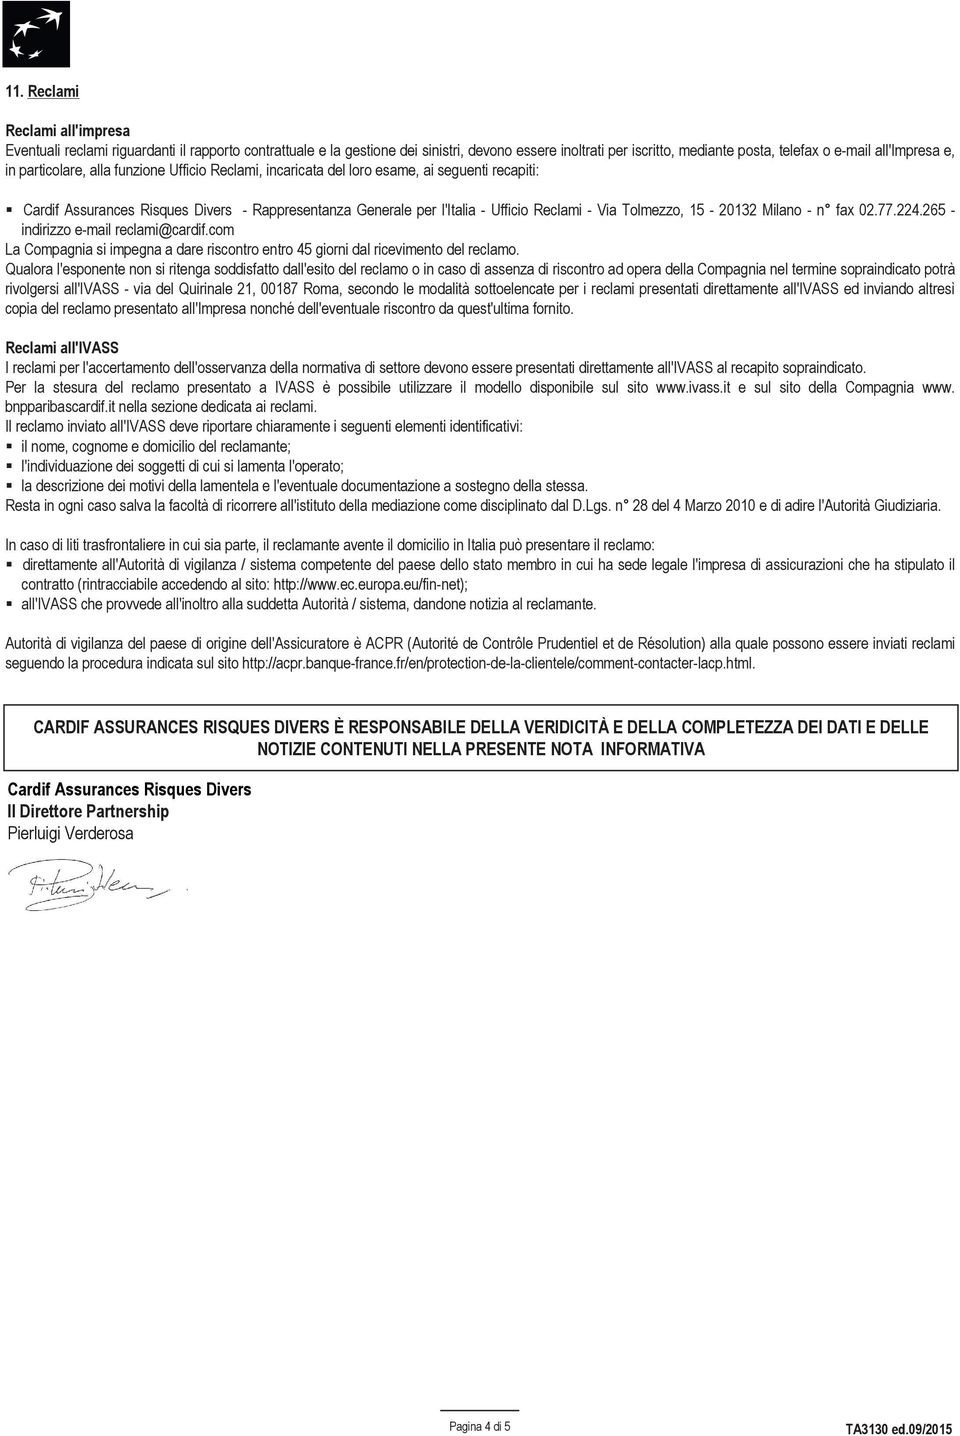 Tolmezzo, 15-20132 Milano - n fax 02.77.224.265 - indirizzo e-mail reclami@cardif.com La Compagnia si impegna a dare riscontro entro 45 giorni dal ricevimento del reclamo.